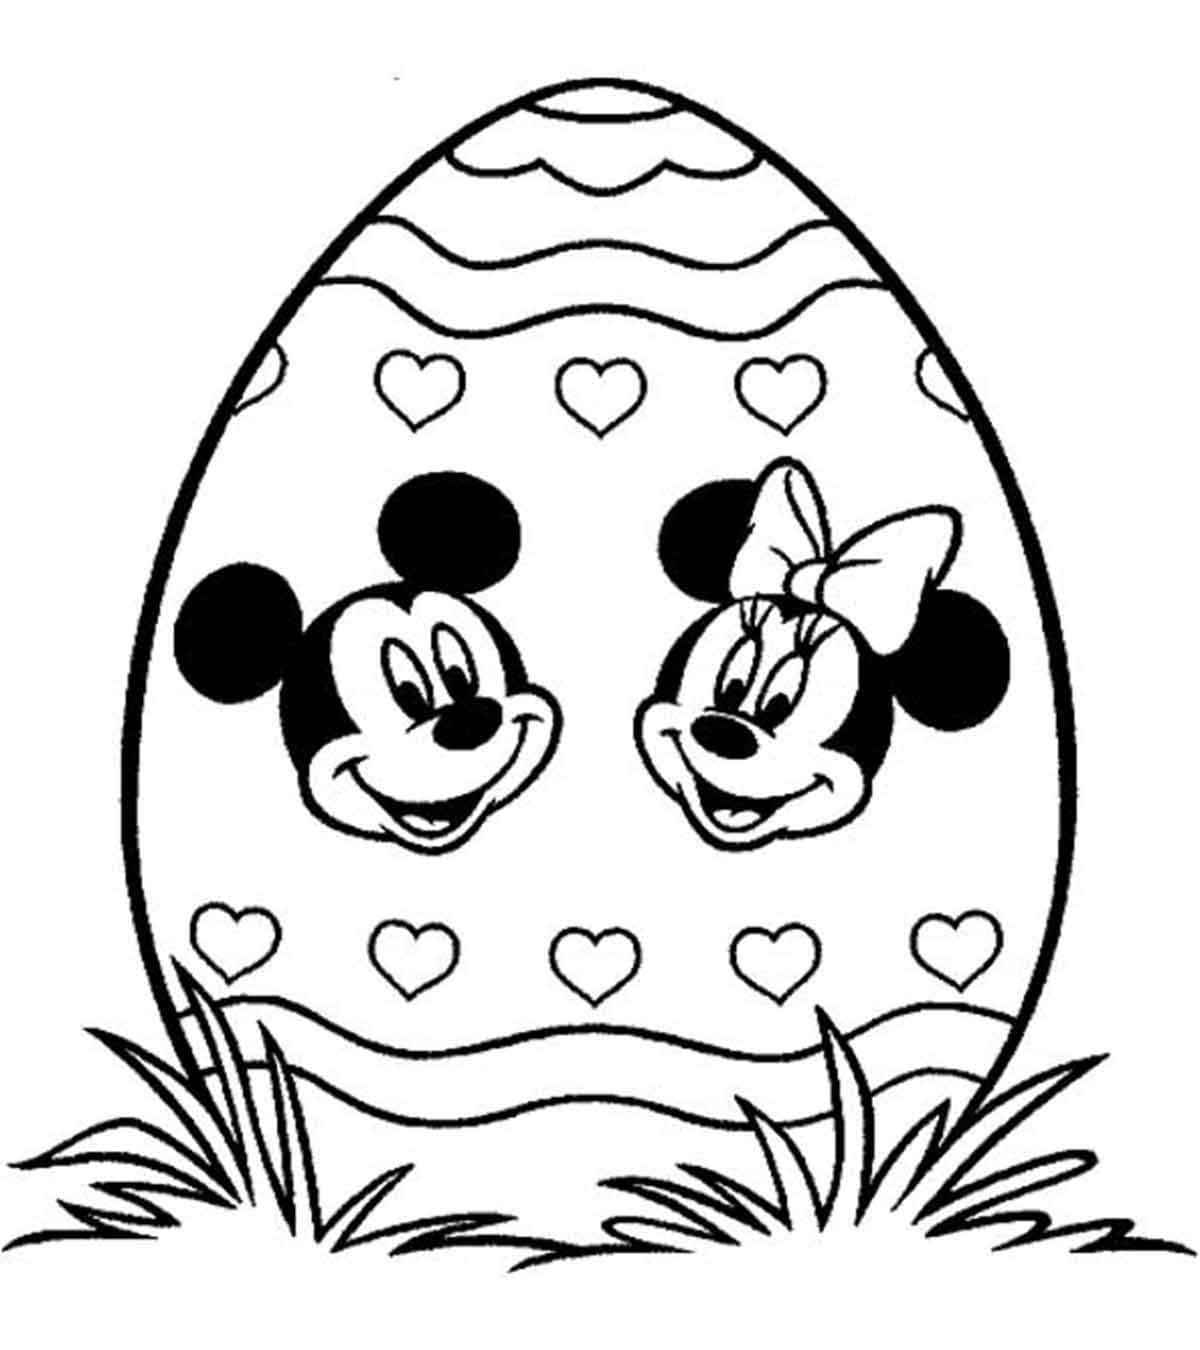 Imagempara Colorir De Páscoa Do Mickey E Minnie Mouse.